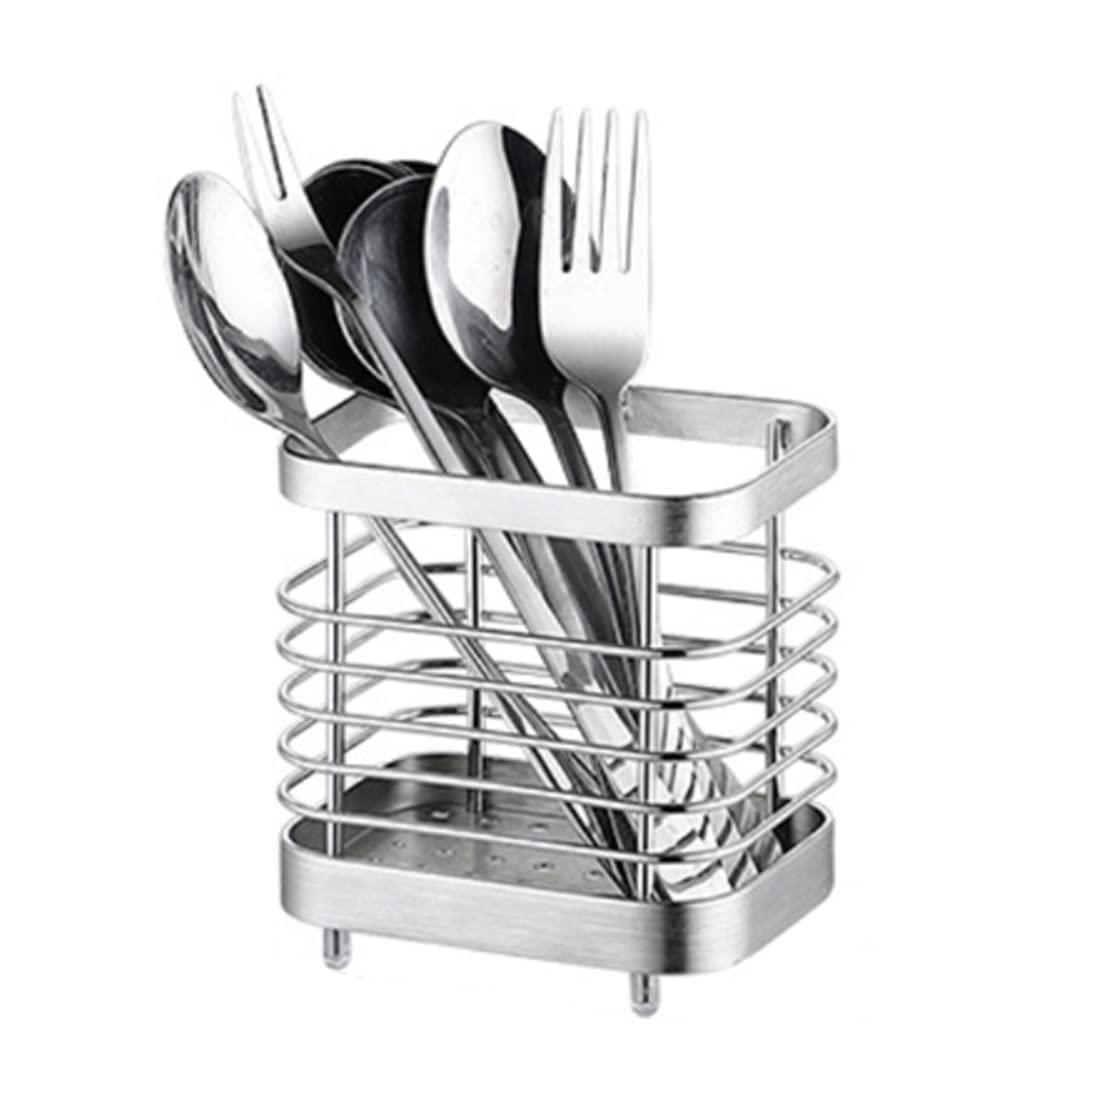 anhorts sink caddy, sink sponge holder, kitchen sink organisers, cutlery drainer for kitchen utensil, stainless steel sink ca